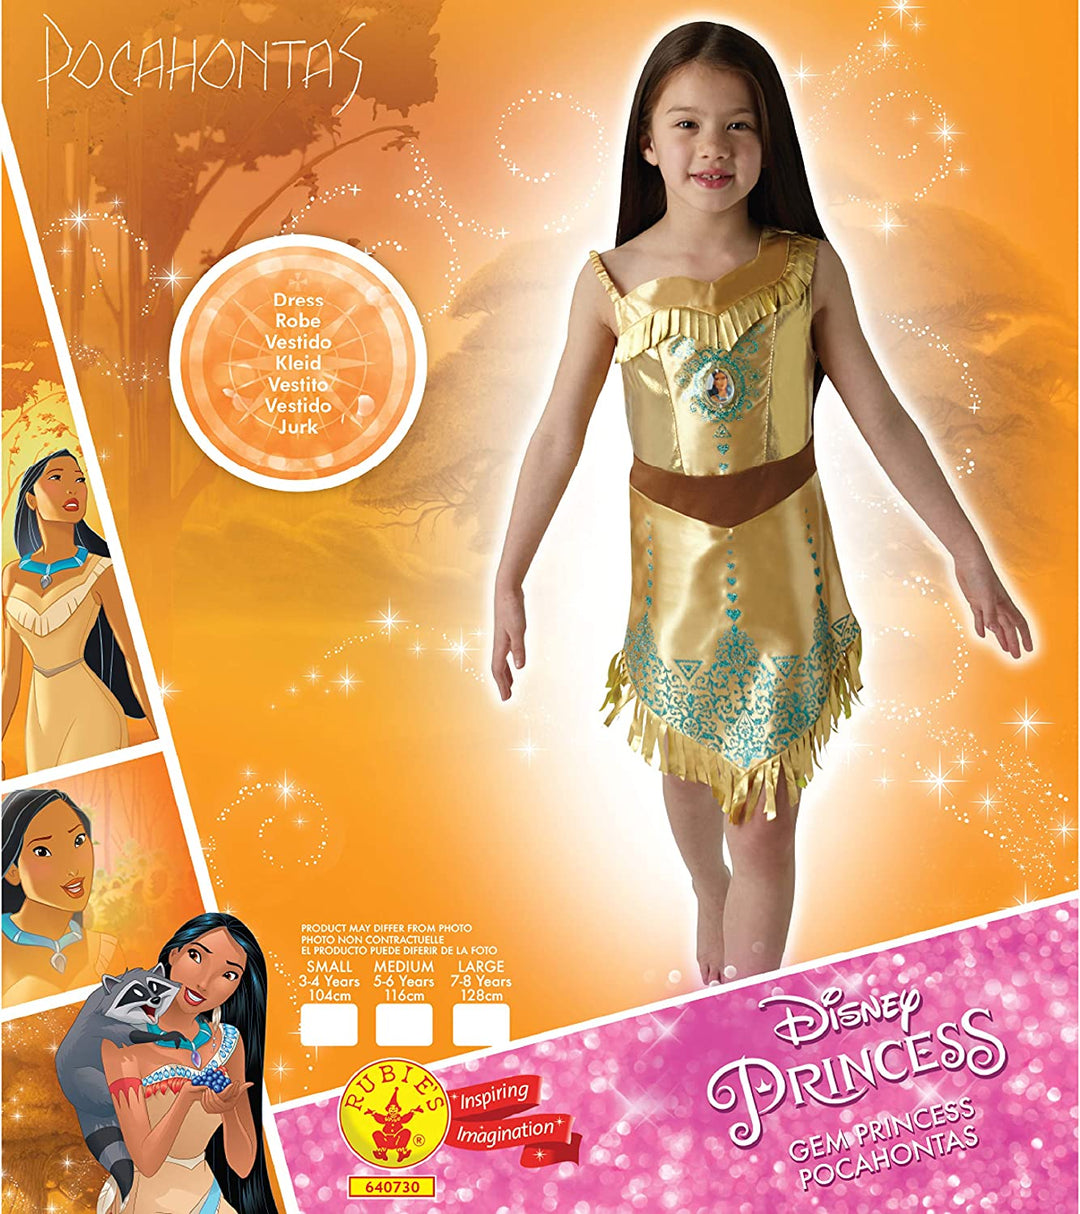 Pocahontas Costume Girls Gem Princess_4